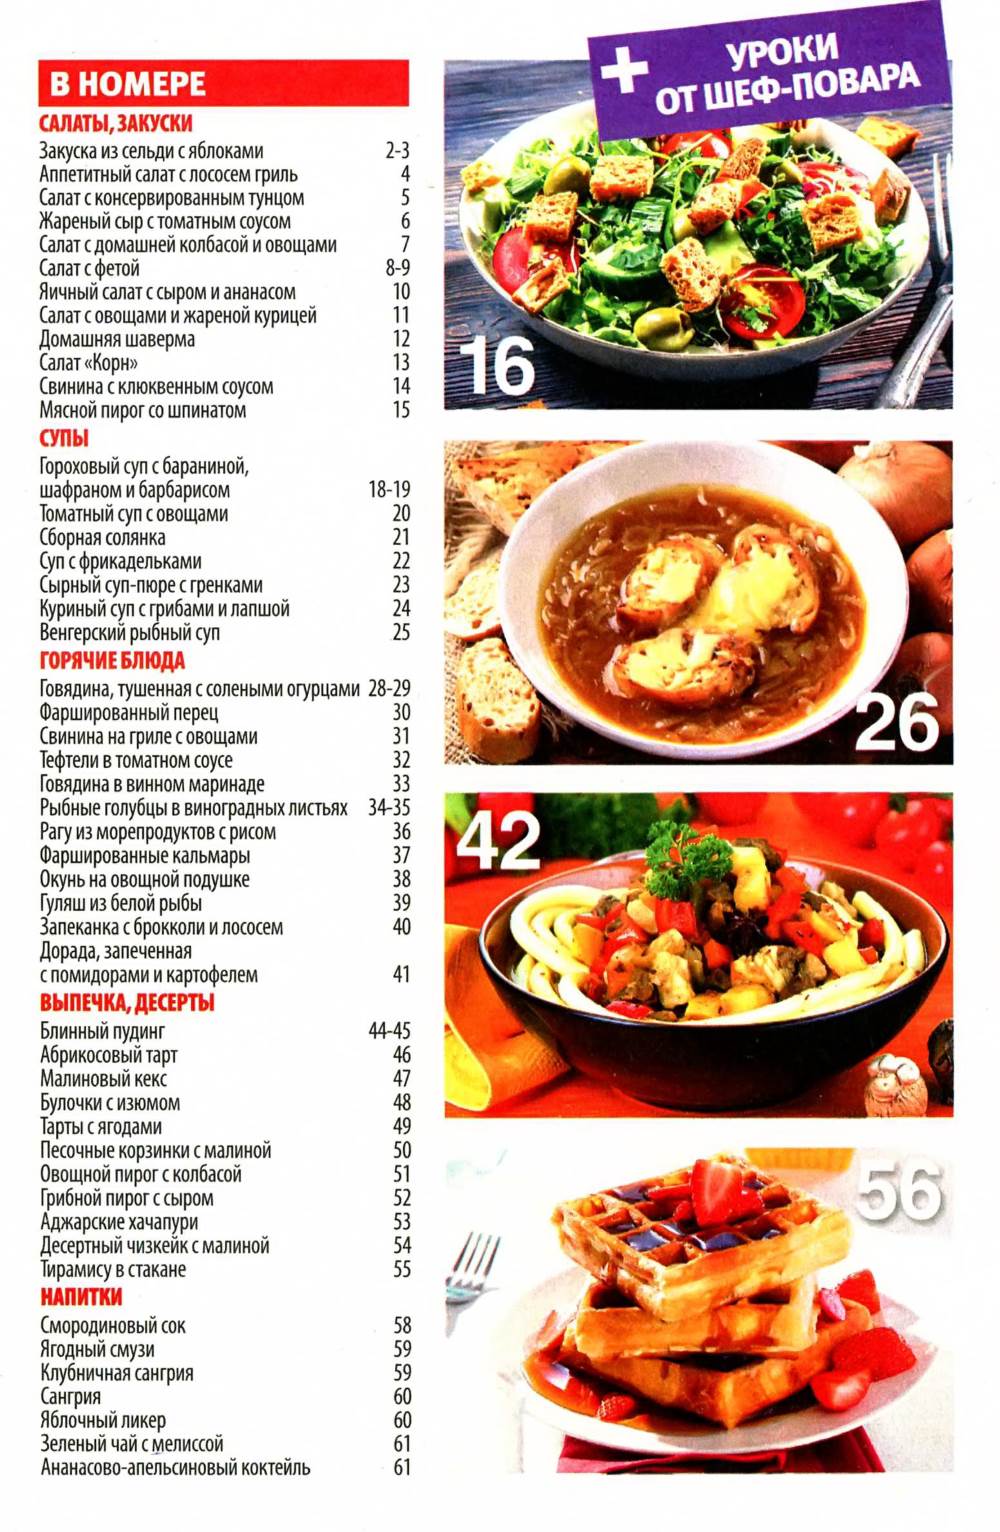 SHkola kulinara    10 2014 goda sod Любимый кулинарно информационный журнал «Школа кулинара №10 2014 года»